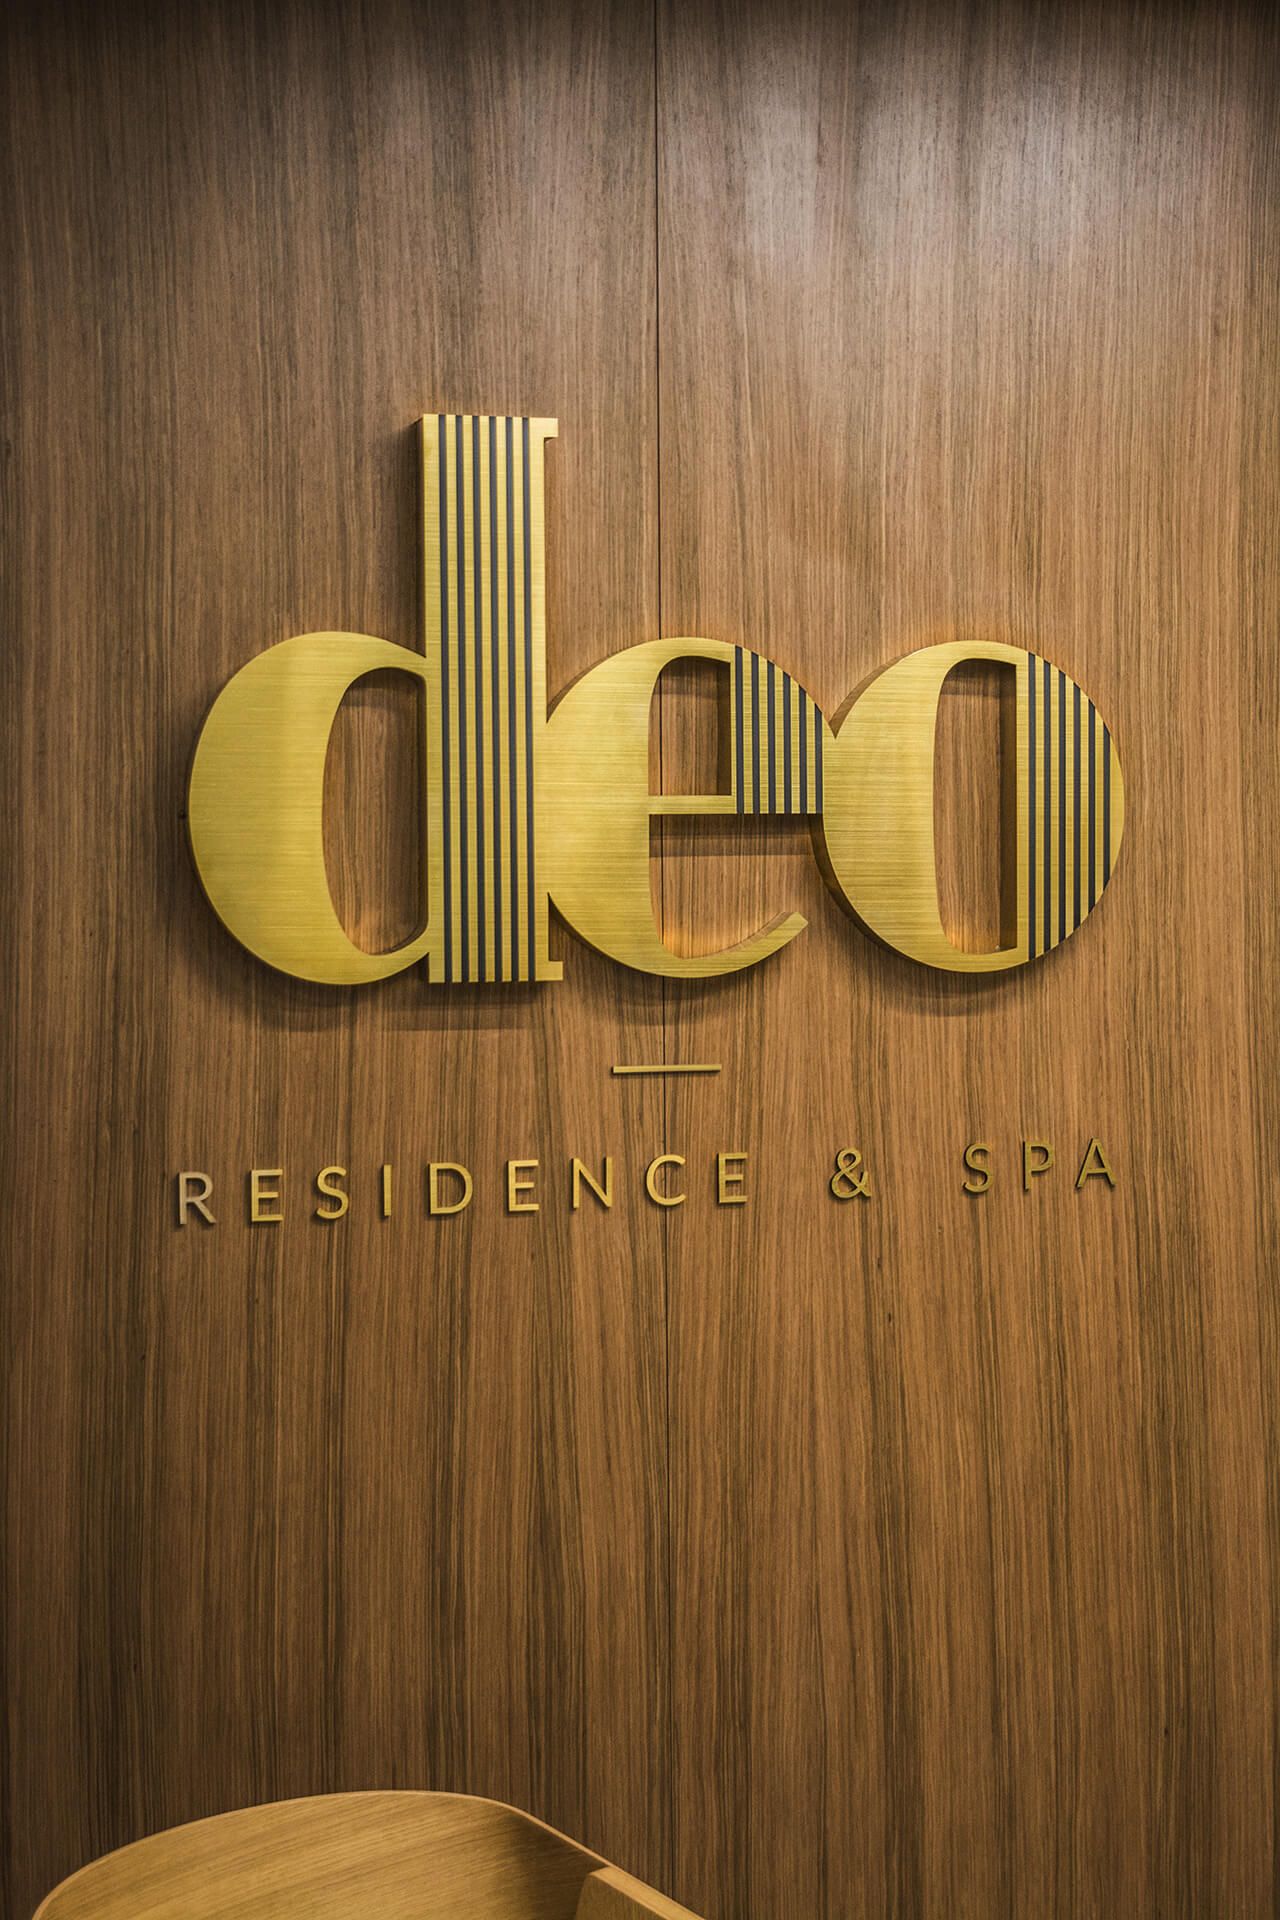 deo residence deo hotel spa - deo-residence-litery-z-blachy-nierdzewnej-szczotkowane-litery-nad-wejsciem-do-biurowca-litery-na-wysokosci-montowane-do-sciany-litery-na-kaflach-litery-na-deskach-logo-firmowe-gdansk